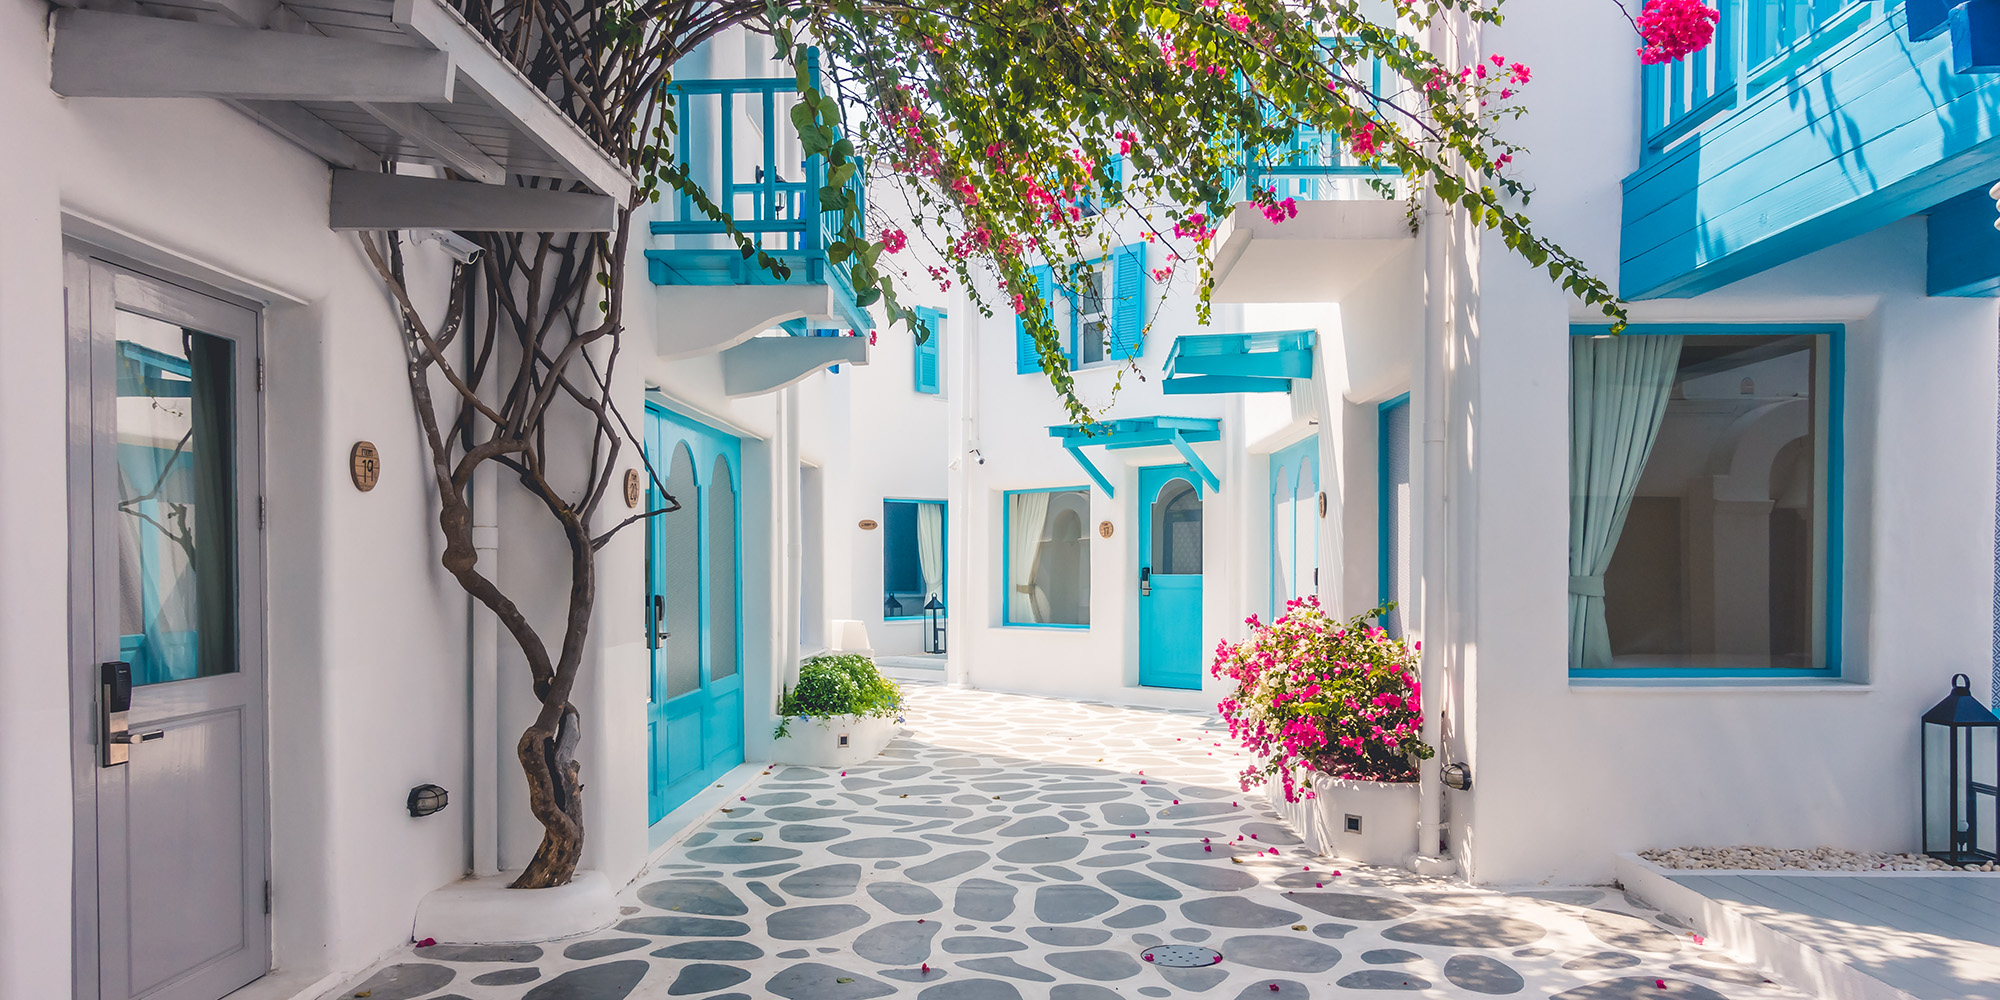 Grecja — miejsce, w którym biel spotyka błękit